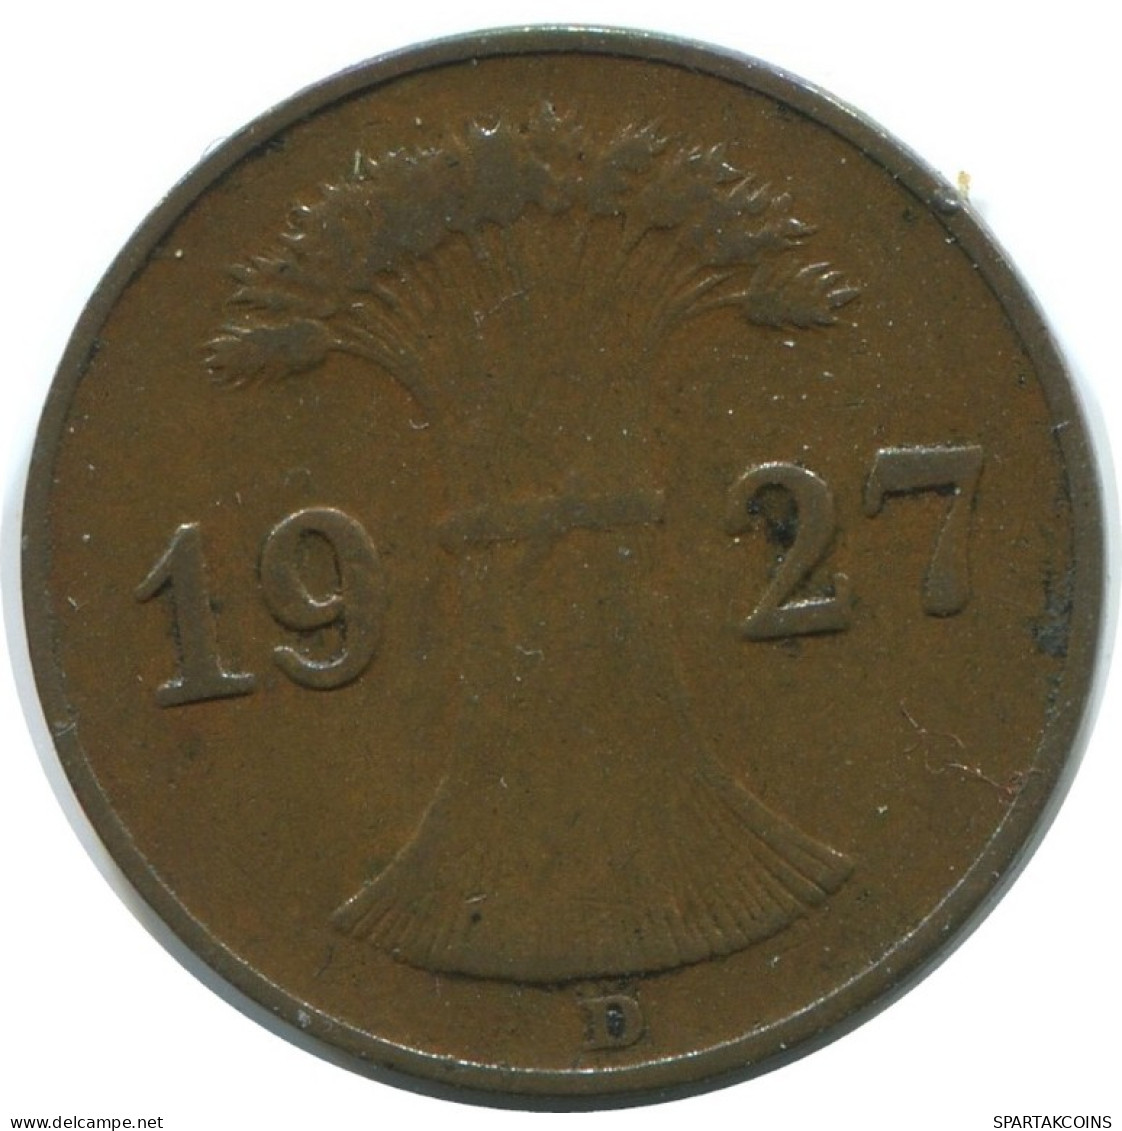 1 REICHSPFENNIG 1927 D DEUTSCHLAND Münze GERMANY #AE225.D.A - 1 Rentenpfennig & 1 Reichspfennig